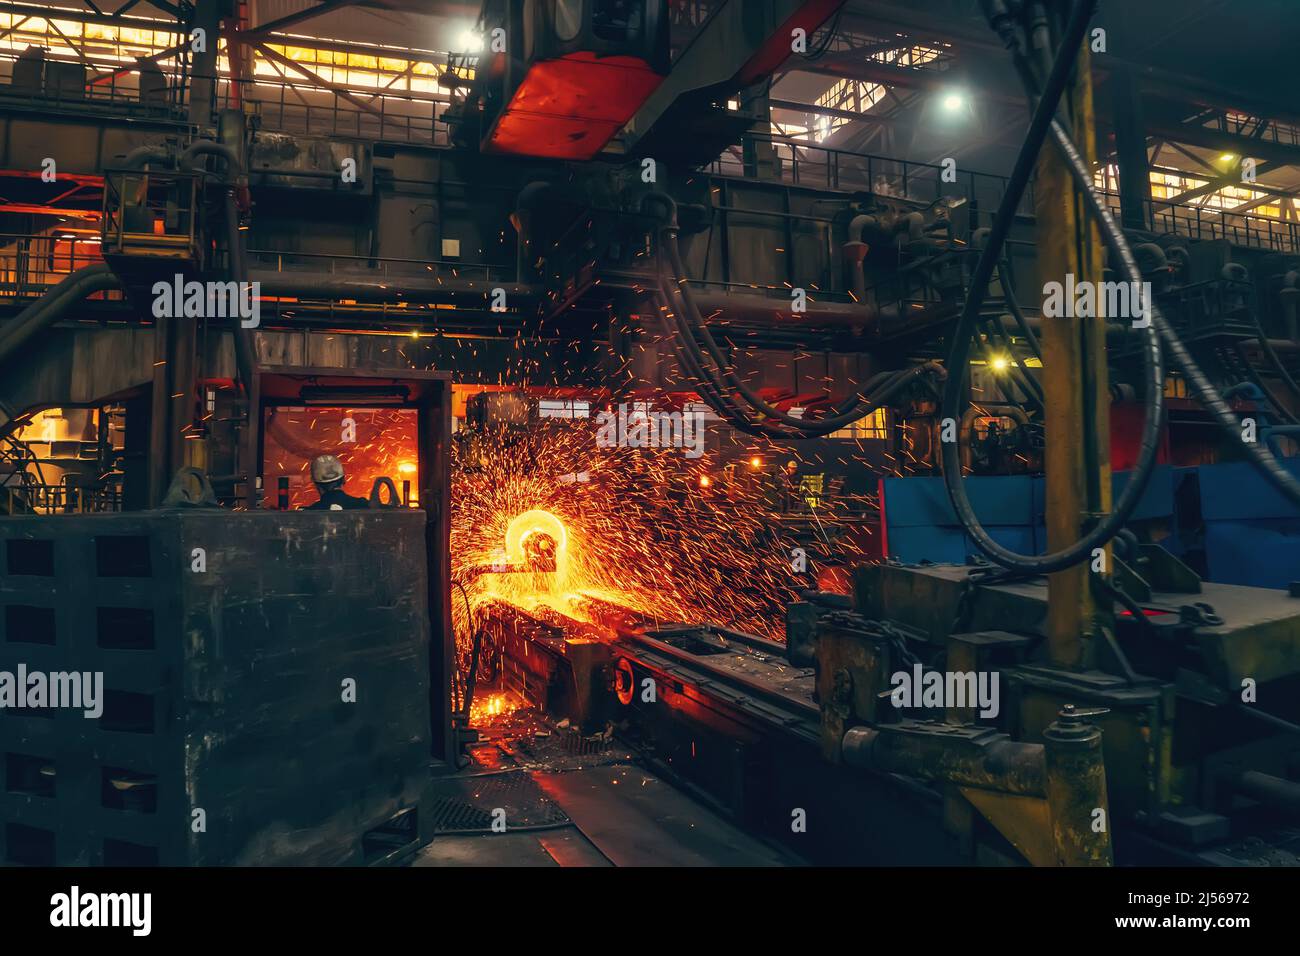 Metallguss in metallurgischen Anlagen oder Fabriken. Prozess der Schmelz- und Formherstellung von Eisenrohren in industriellen Maschinen in der Werkstatt. Stockfoto